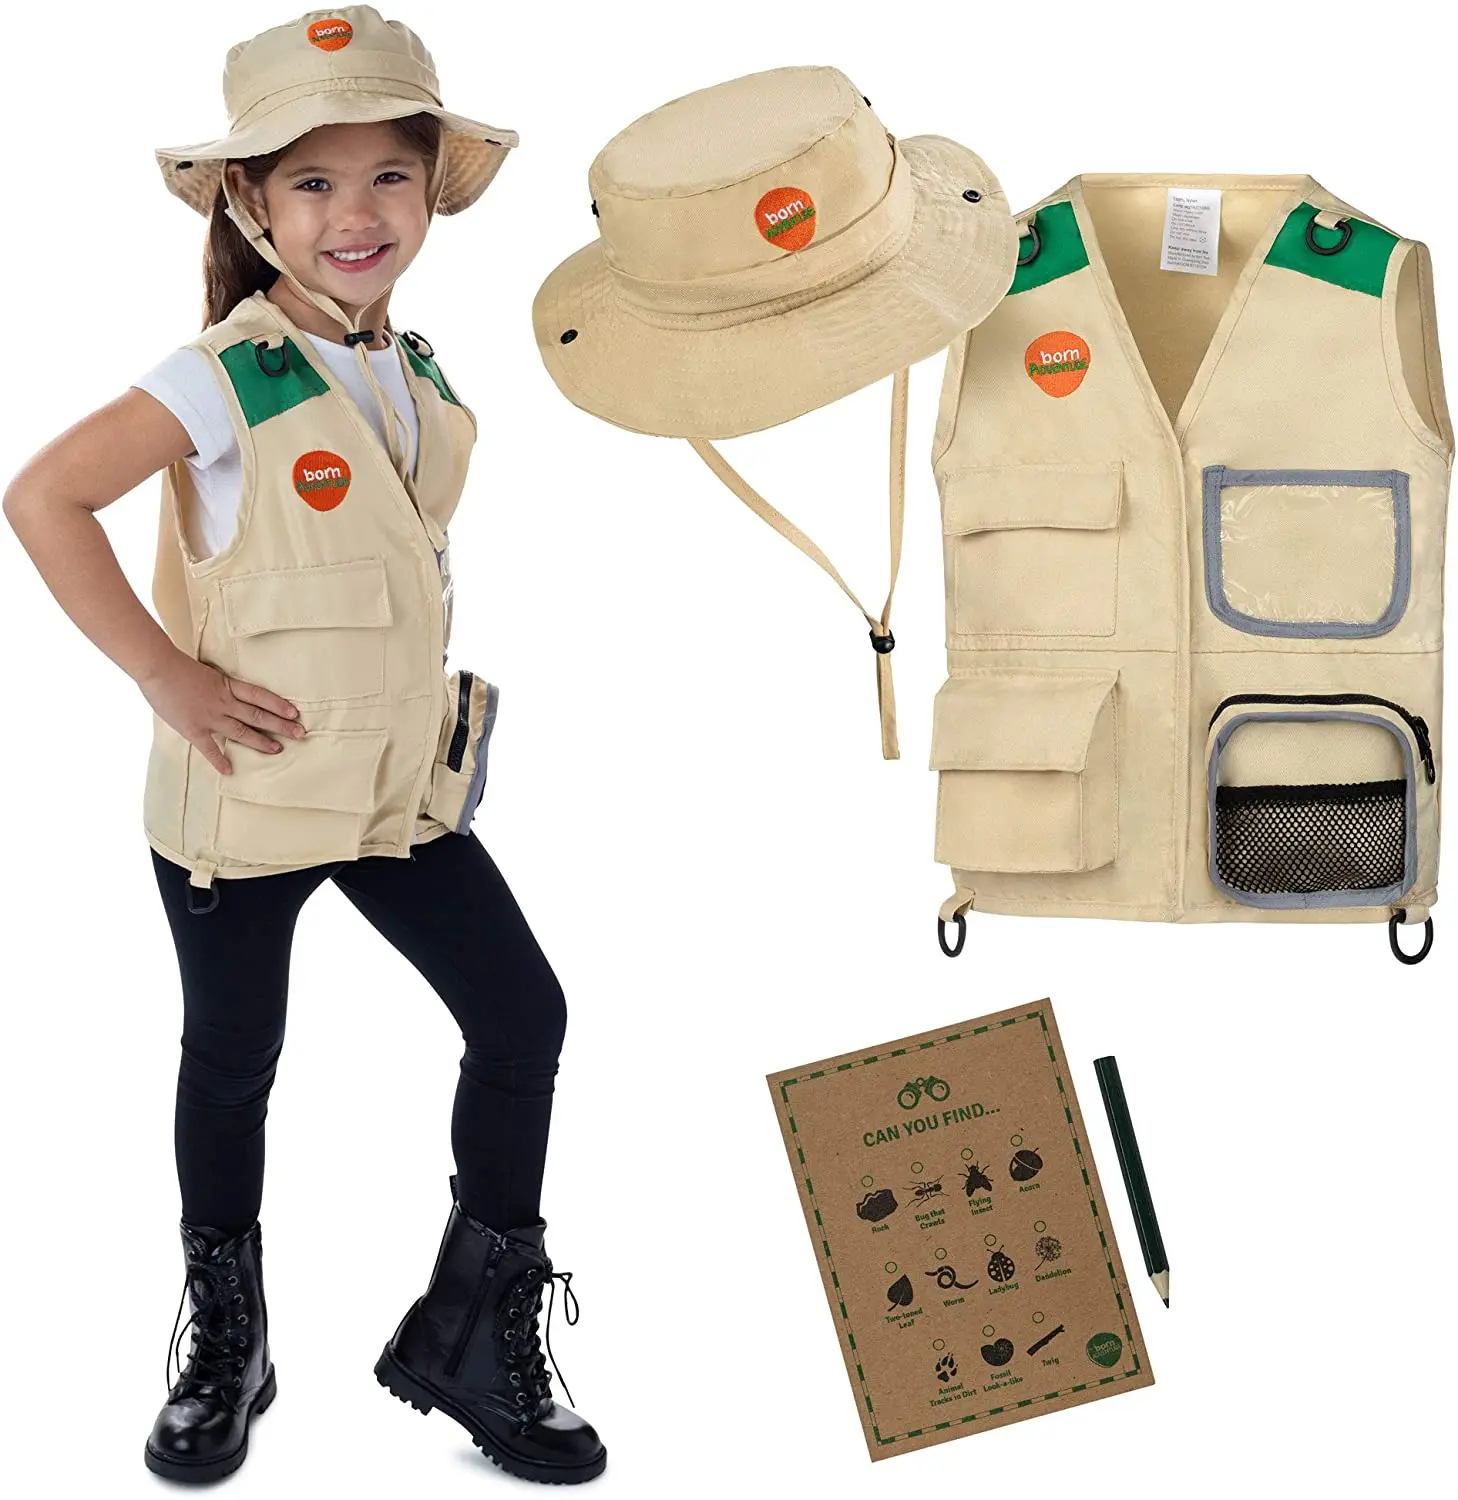 Backyard Safari Cargo Vest Kids Outdoor ... Kids Explorer Vest and Hat Costume 